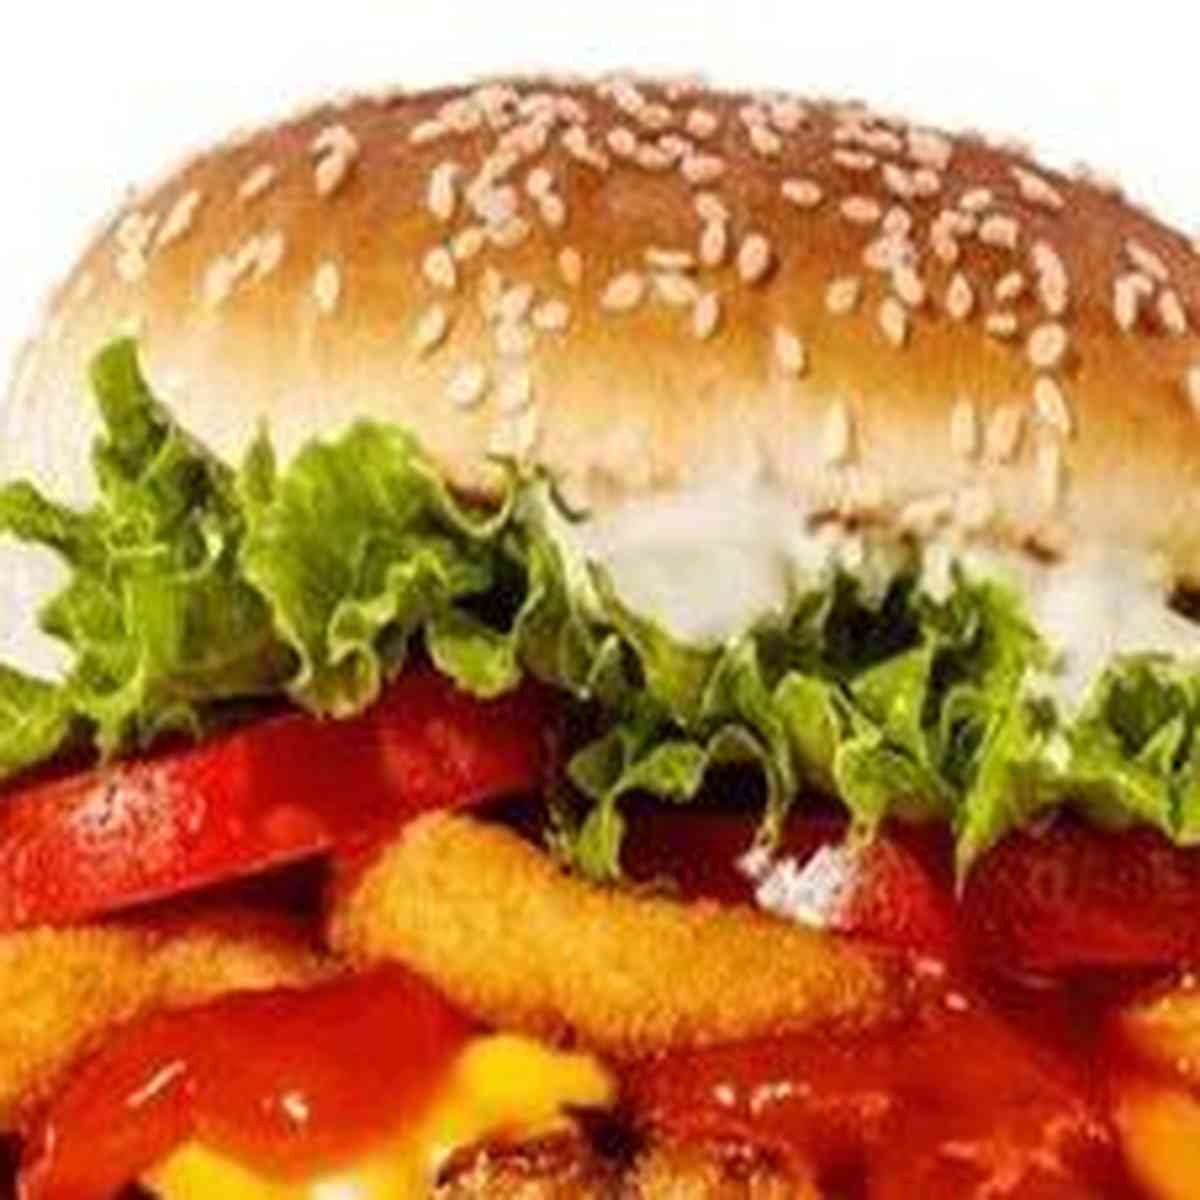 😦😦😦😦 720g de carne nesse hambuguer topzera 😍 não satisfeito